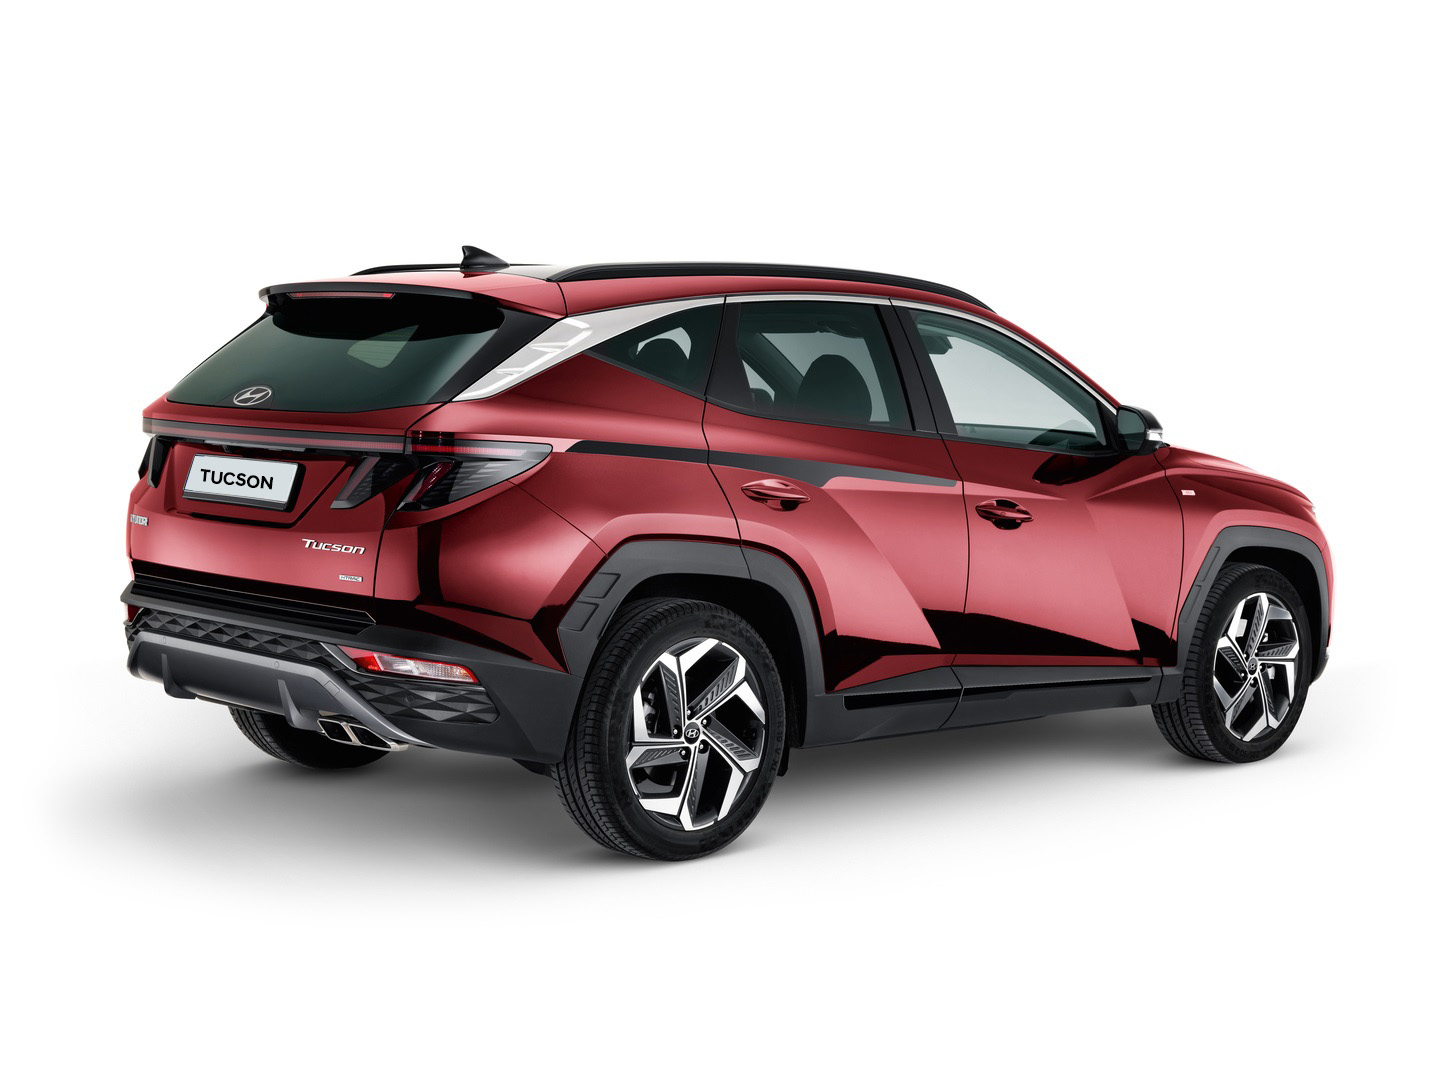 Seitenschutzleisten-Satz für Hyundai Tucson NX4 HEV 2020/12- - AUTOPLUS  Zubehör